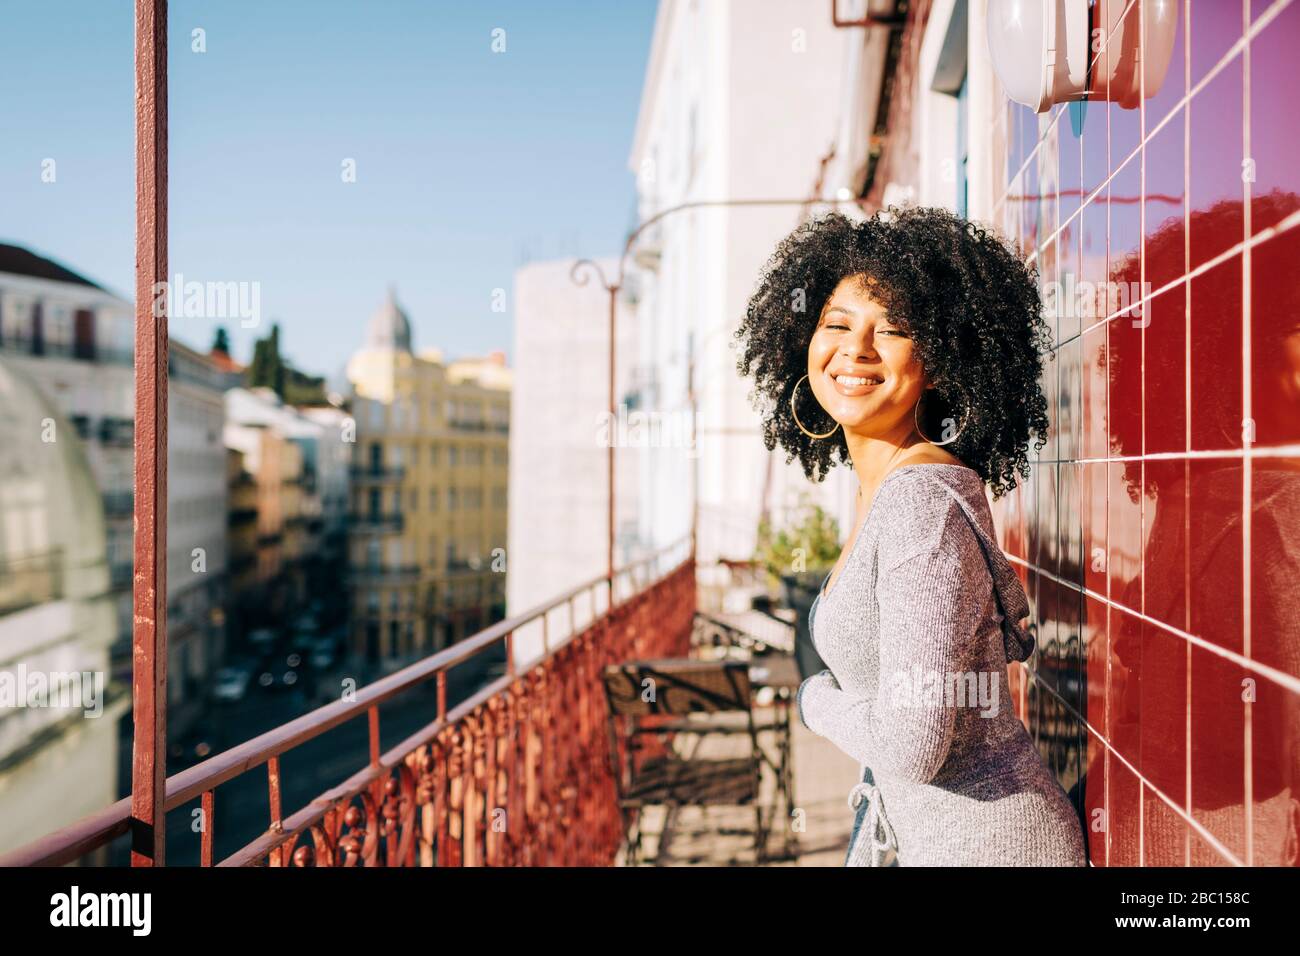 Porträt der glücklichen jungen Frau mit lockigen Haaren auf dem Balkon Stockfoto